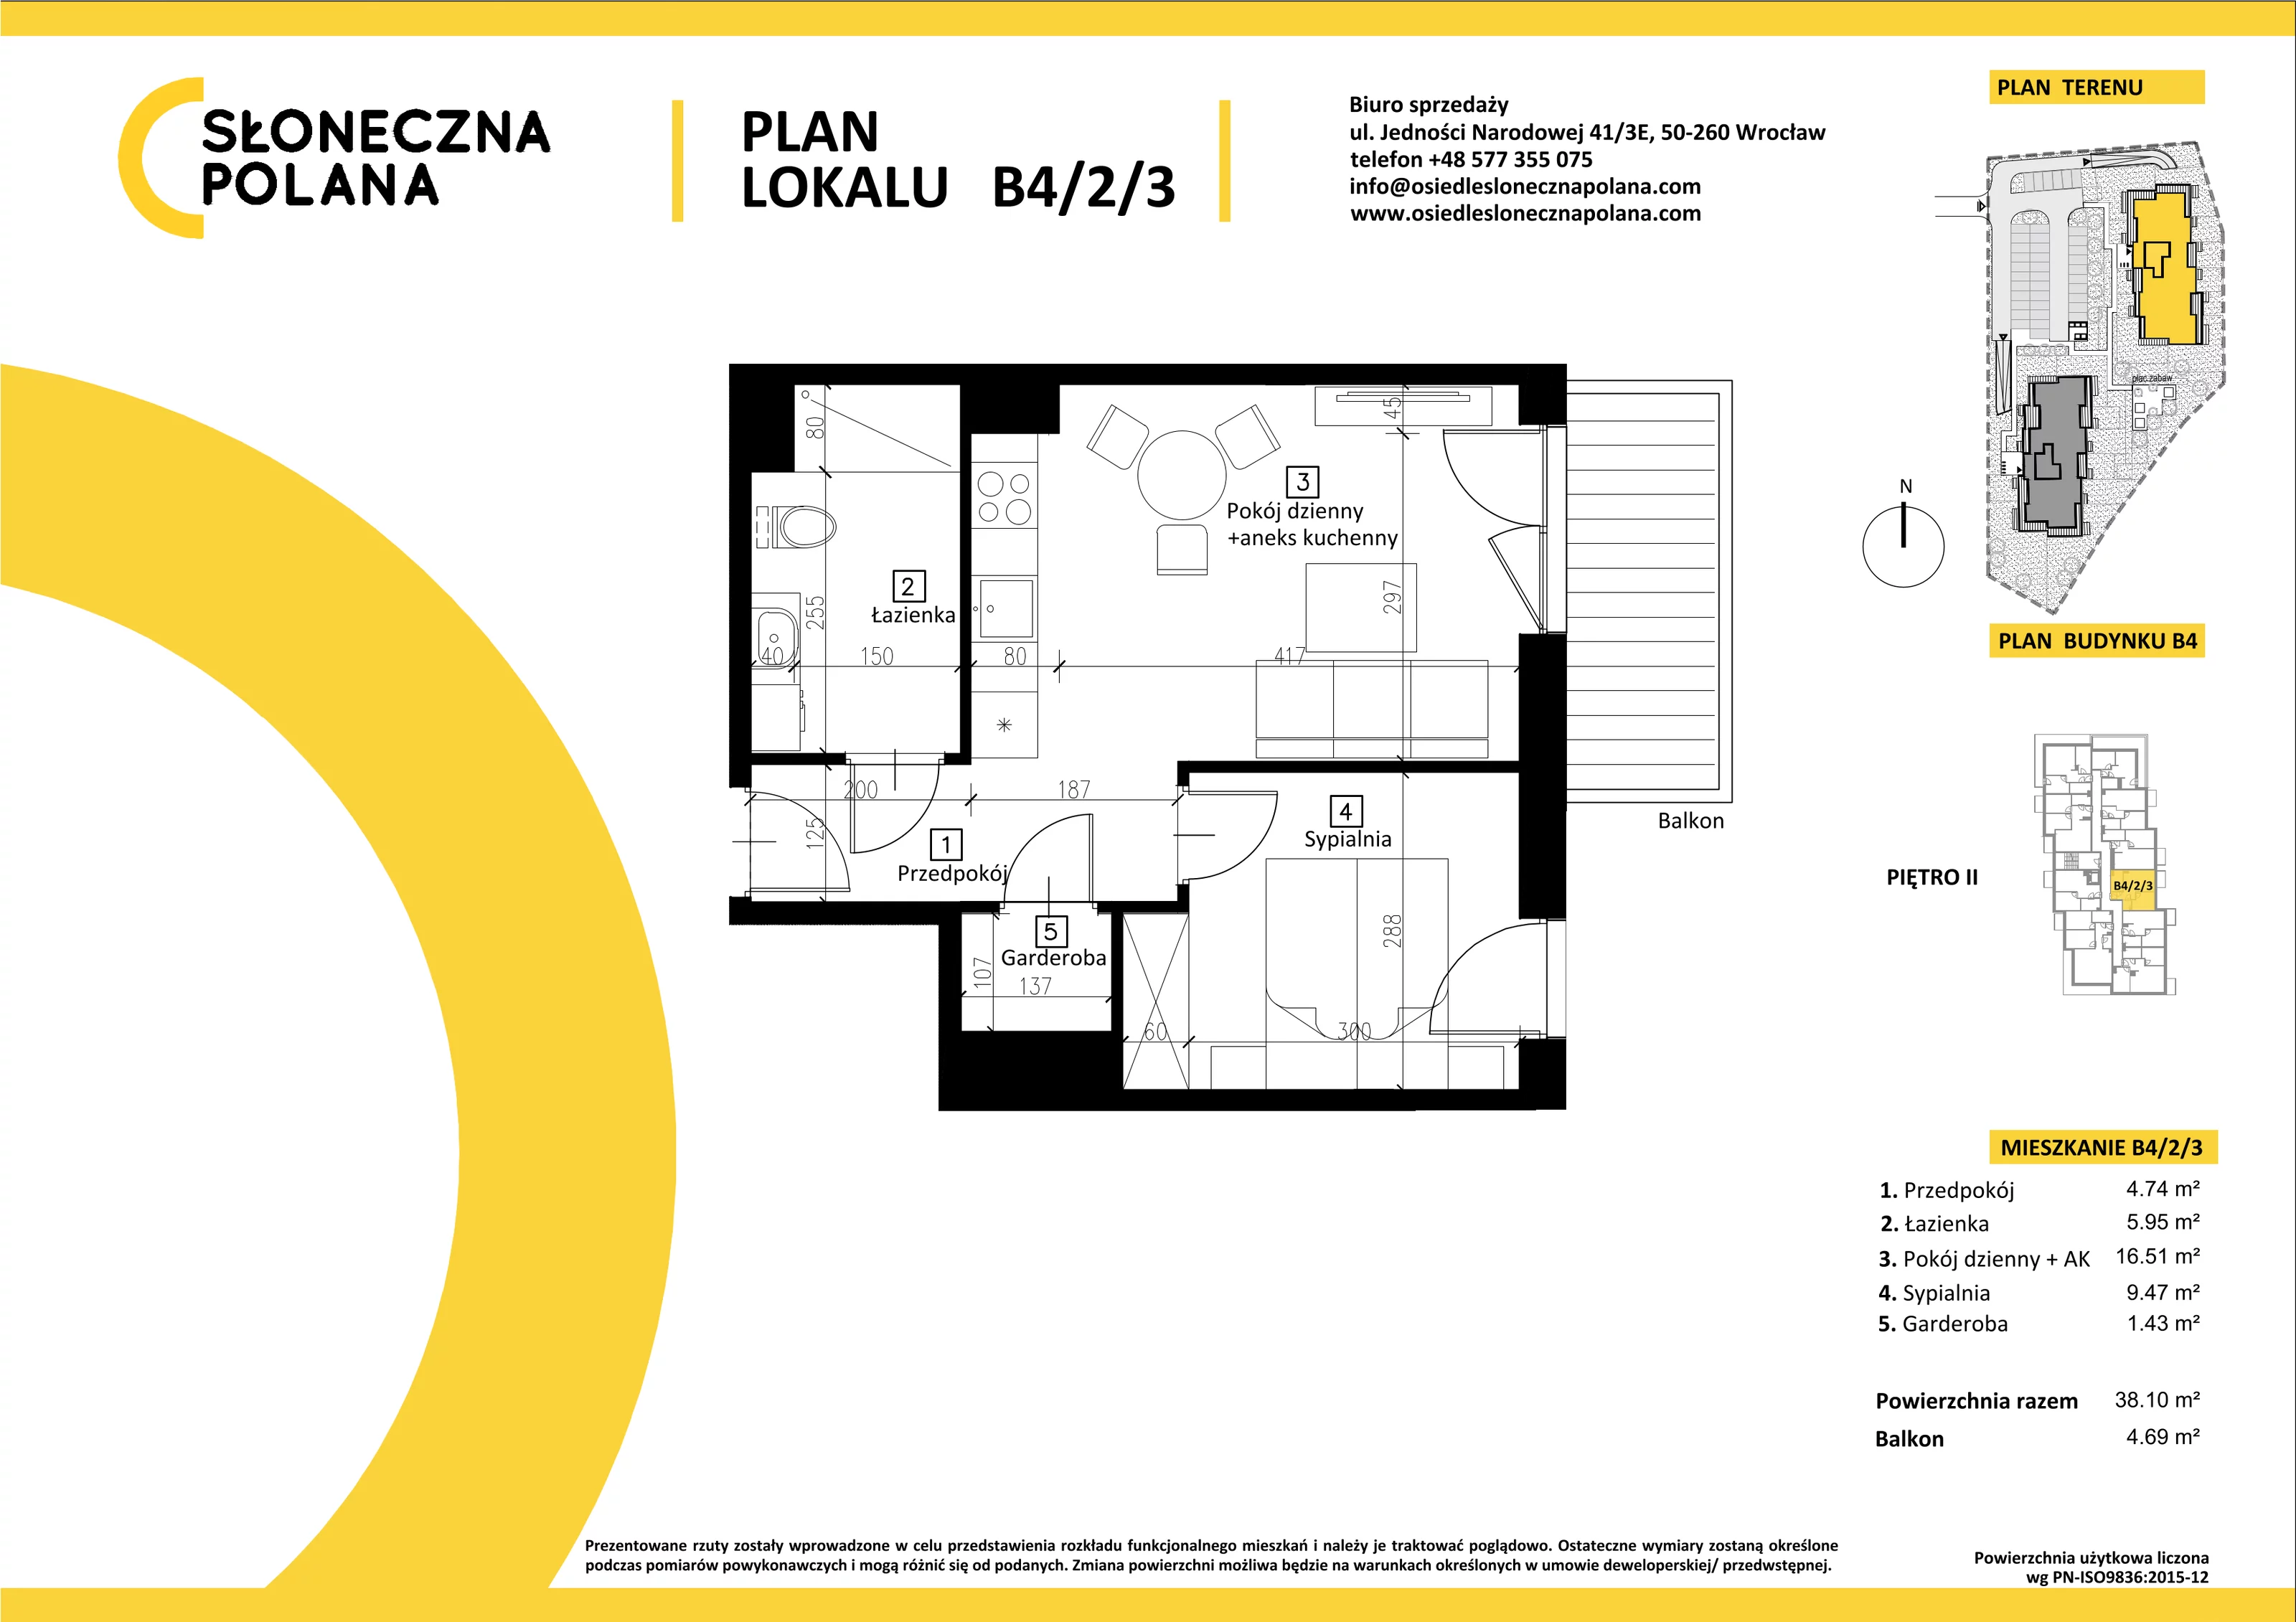 Mieszkanie 38,10 m², piętro 2, oferta nr B4/2/3, Słoneczna Polana, Kudowa-Zdrój, ul. Bluszczowa